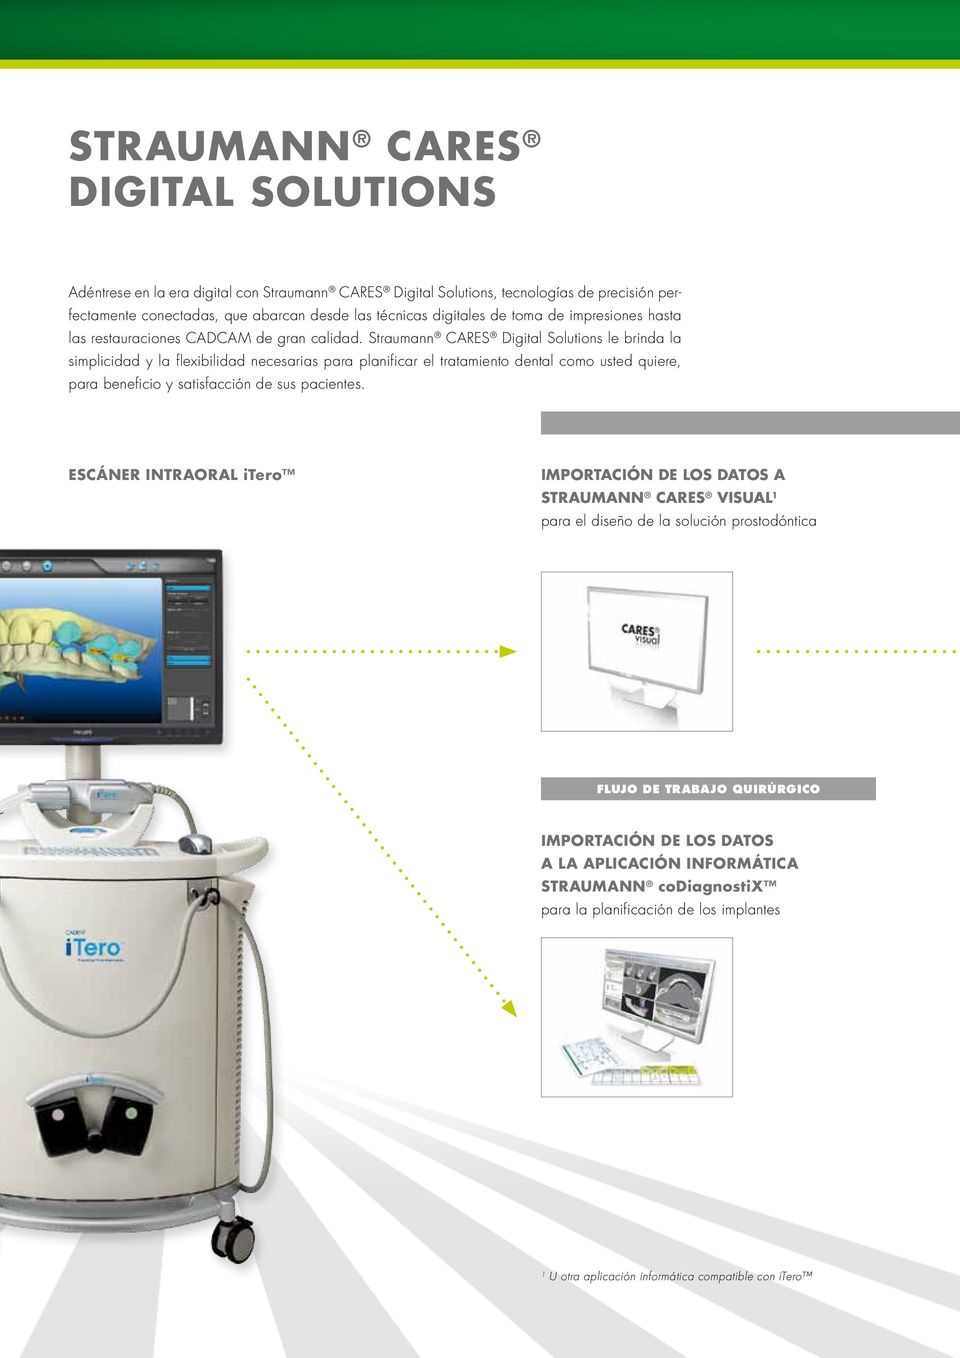 Straumann CARES Digital Solutions le brinda la simplicidad y la flexibilidad necesarias para planificar el tratamiento dental como usted quiere, para beneficio y satisfacción de sus pacientes.